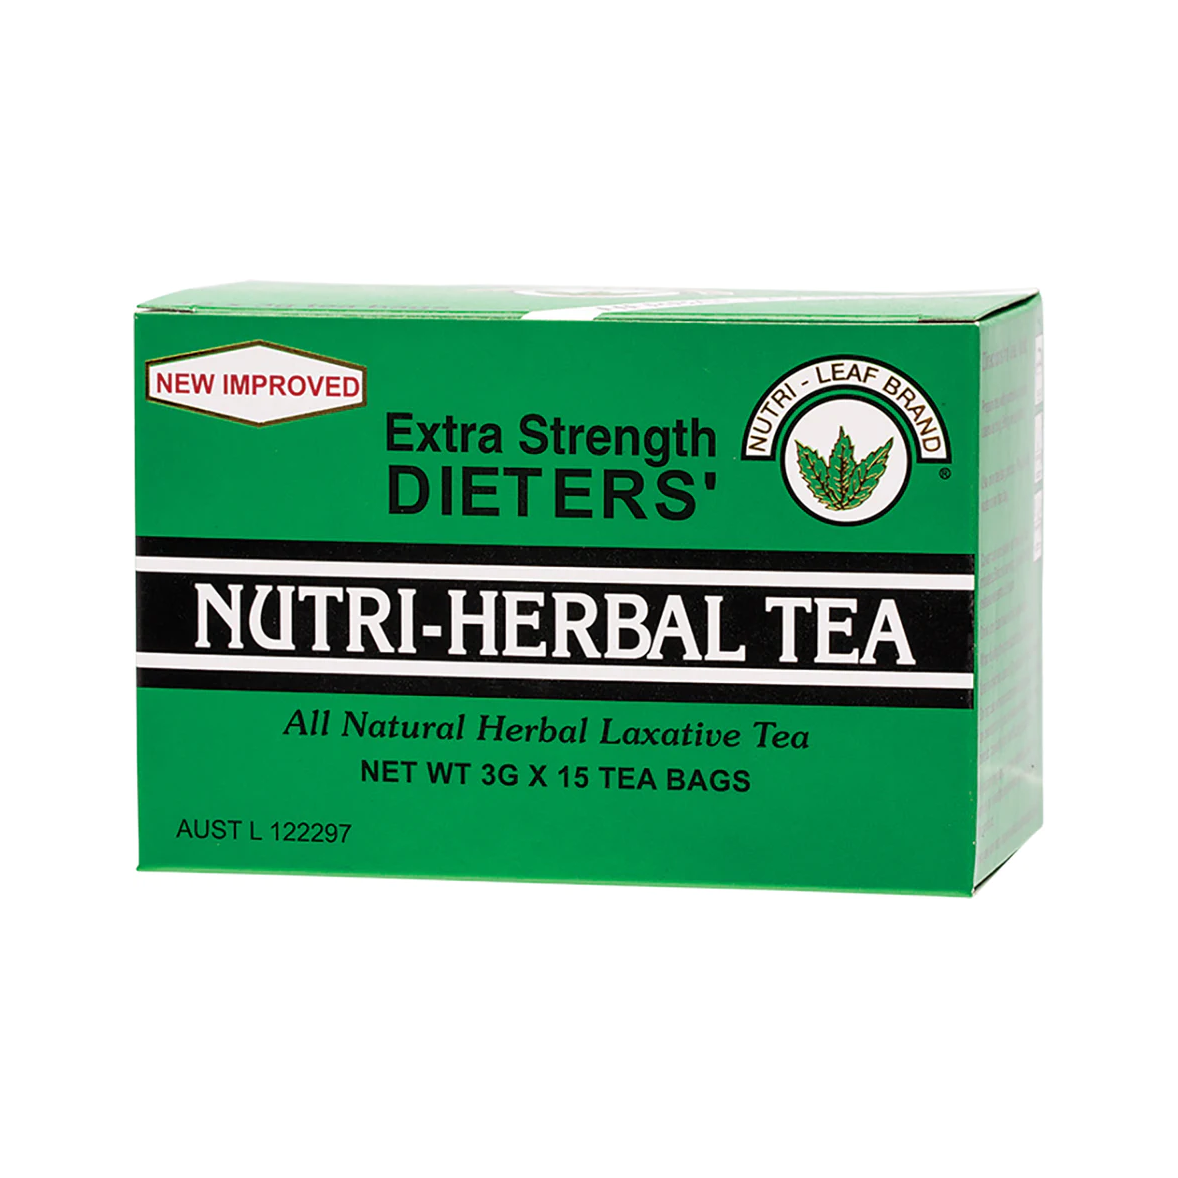 Nutri-Leaf Dieters Nutri-Herbal Tea 15 Tea Bags, Extra Strength